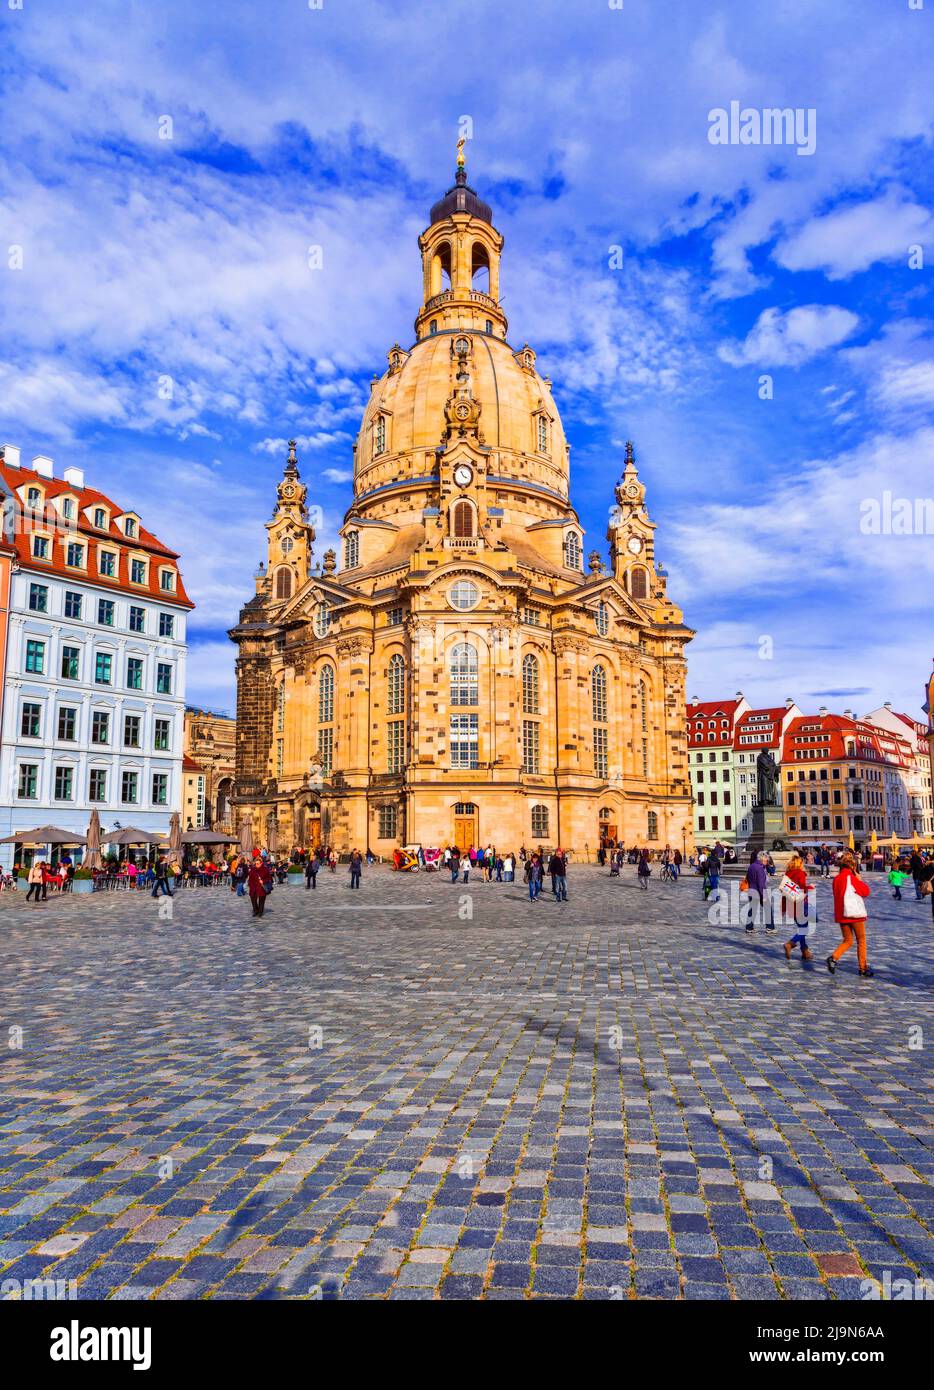 Innenstadt von Dresden Stadtplatz und barocke Kathedrale Unsere Liebe Frau Frauenkirche, Deutschland Stockfoto